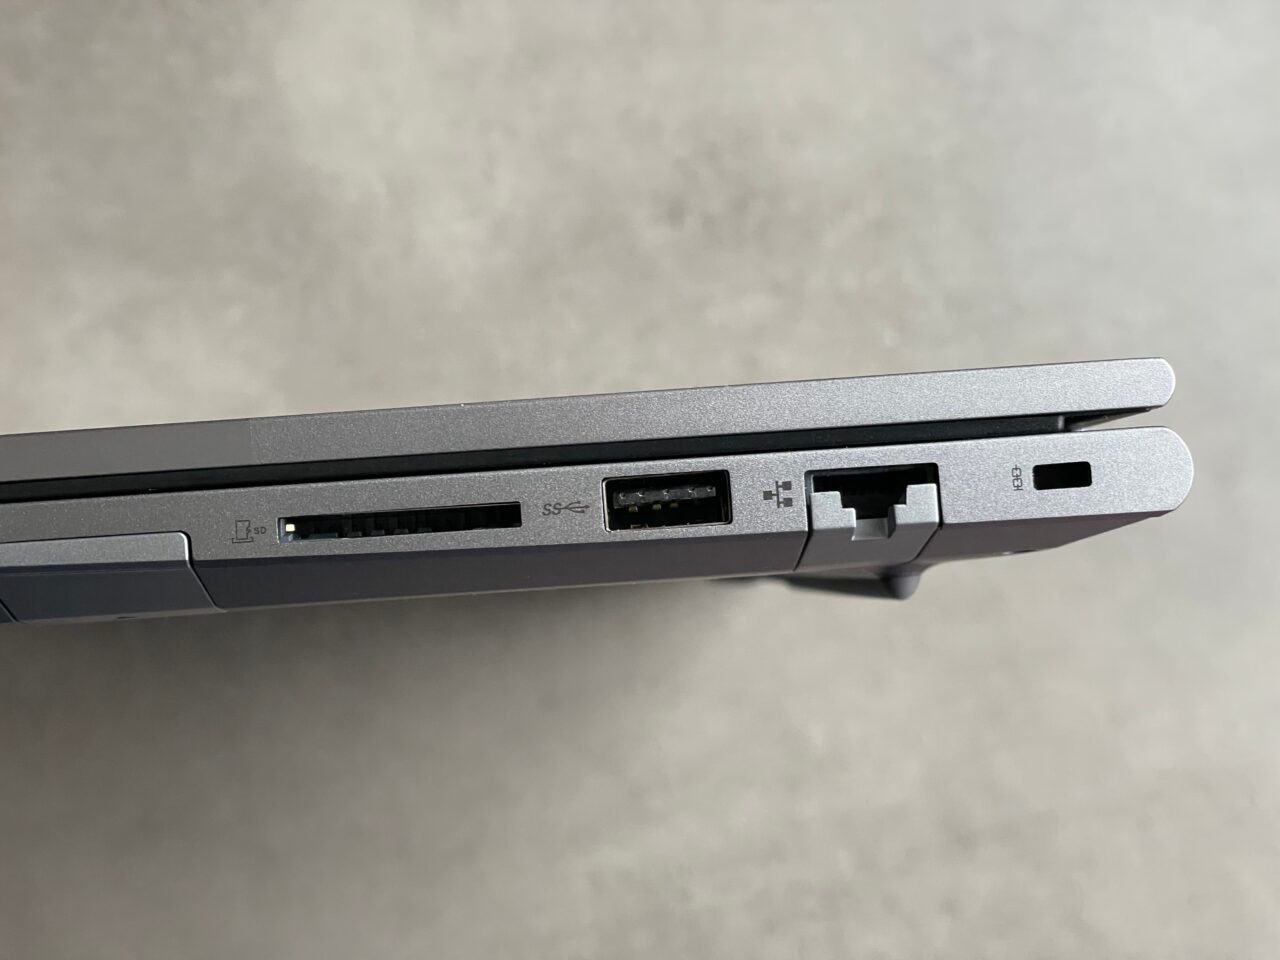 Bok laptopa z widocznymi portami: czytnik kart SD, USB, HDMI oraz Ethernet.